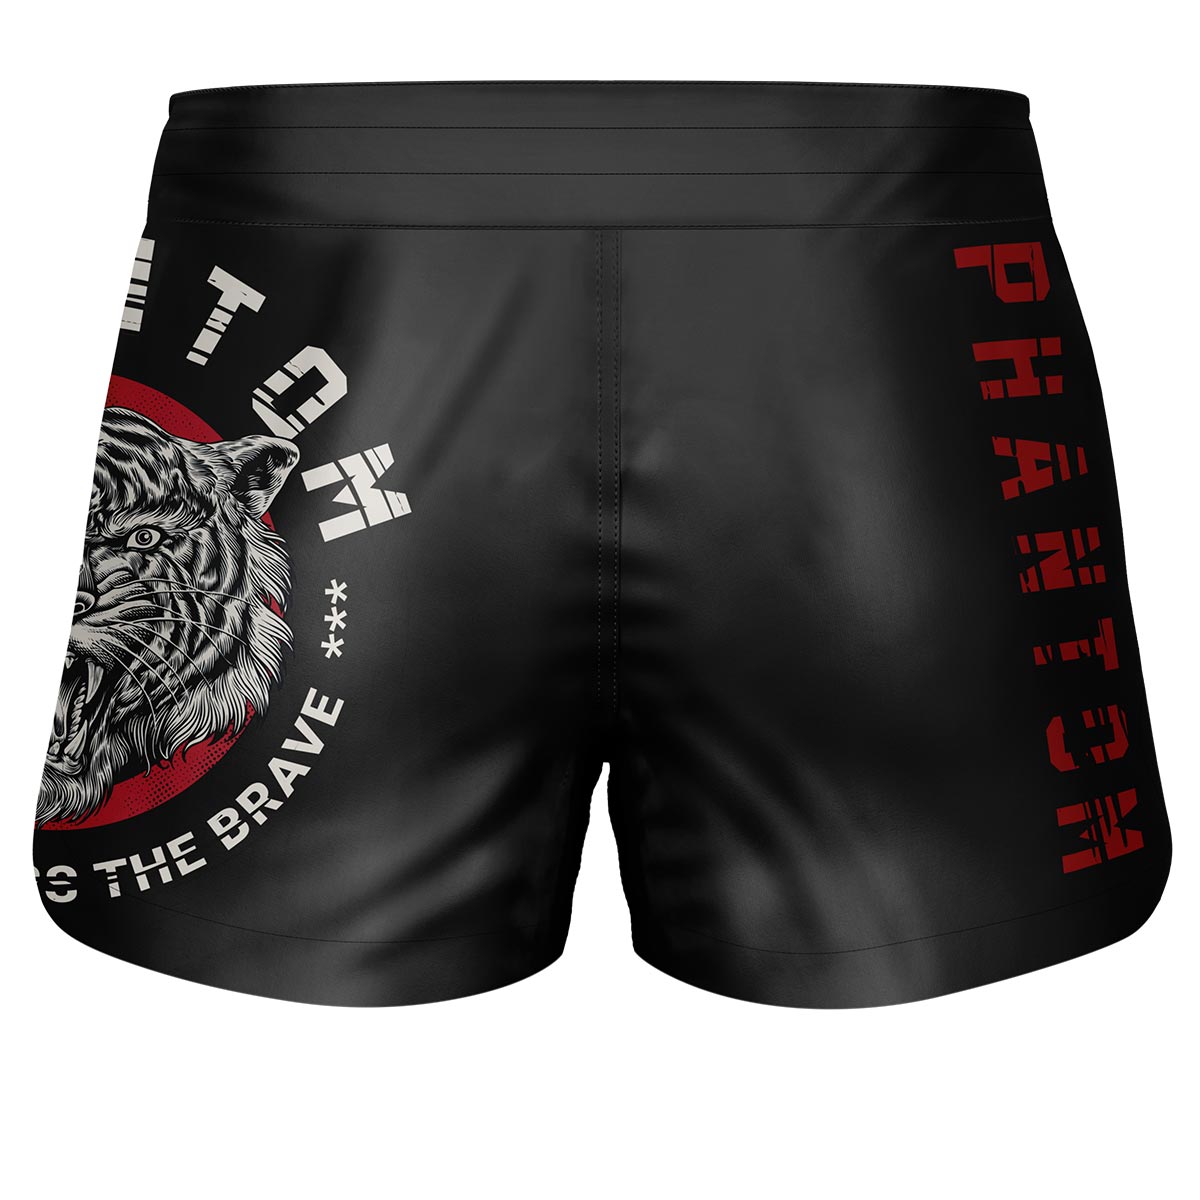 Phantom Fightshorts Fusion 2in1. Ultimative Shorts für deinen Kampfsport. IDeal für MMA, Muay Thai, BJJ, Ringen und mehr. In schwarz mit unserem beliebten Tiger Unit Design.